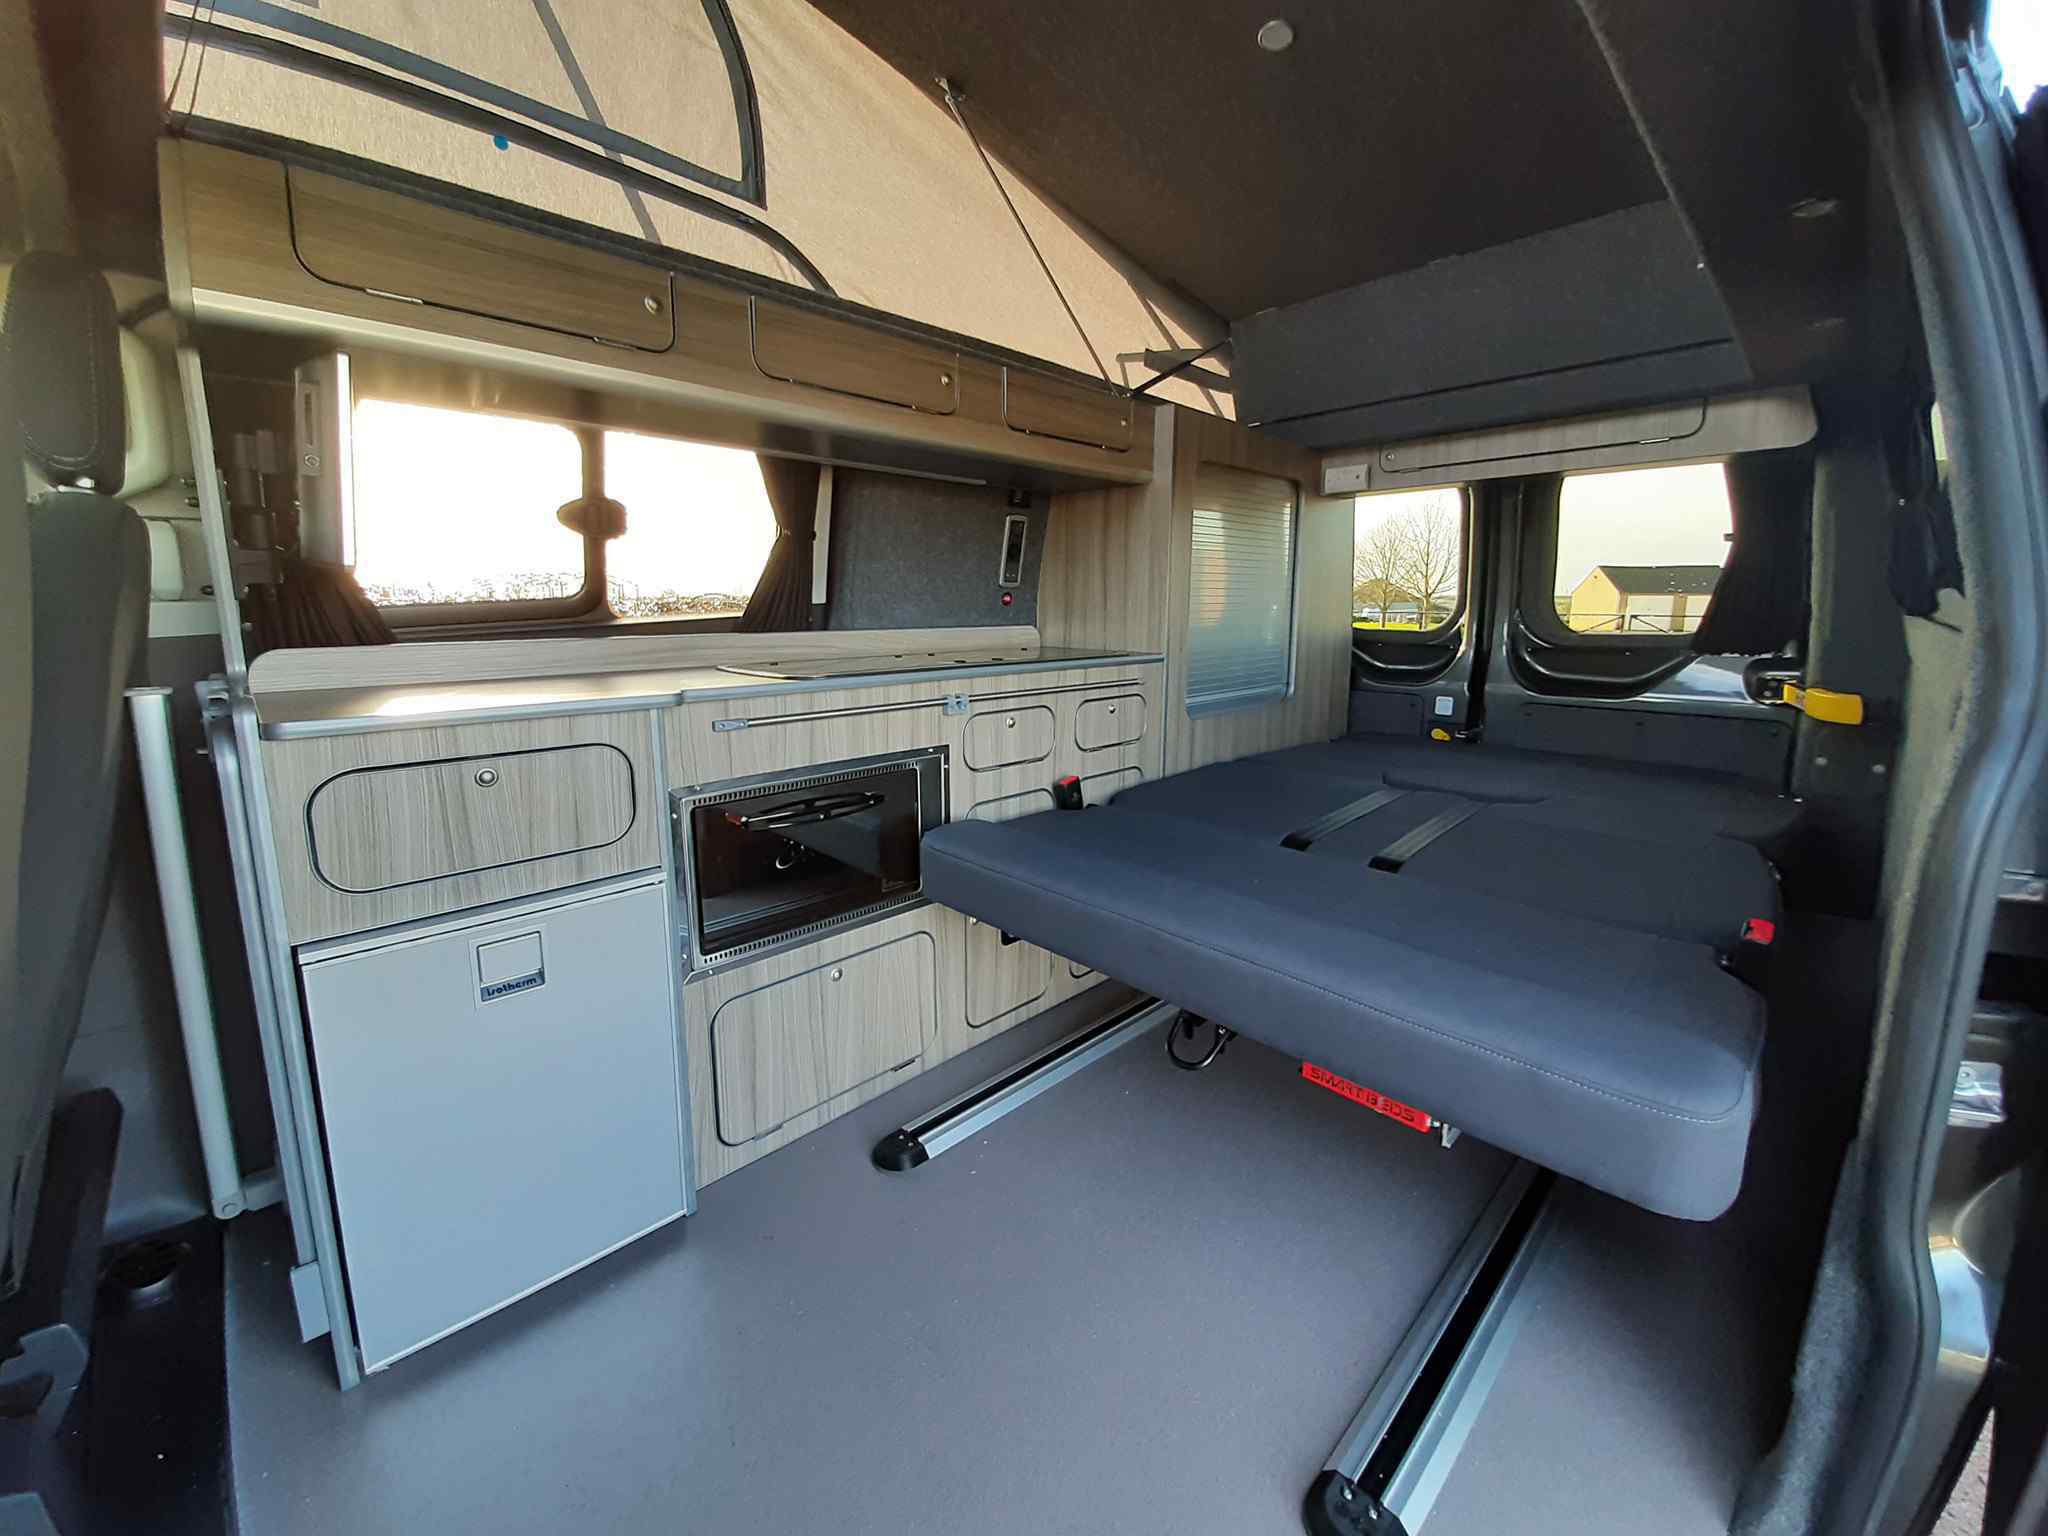 Transit Custom camper van interior .jpg